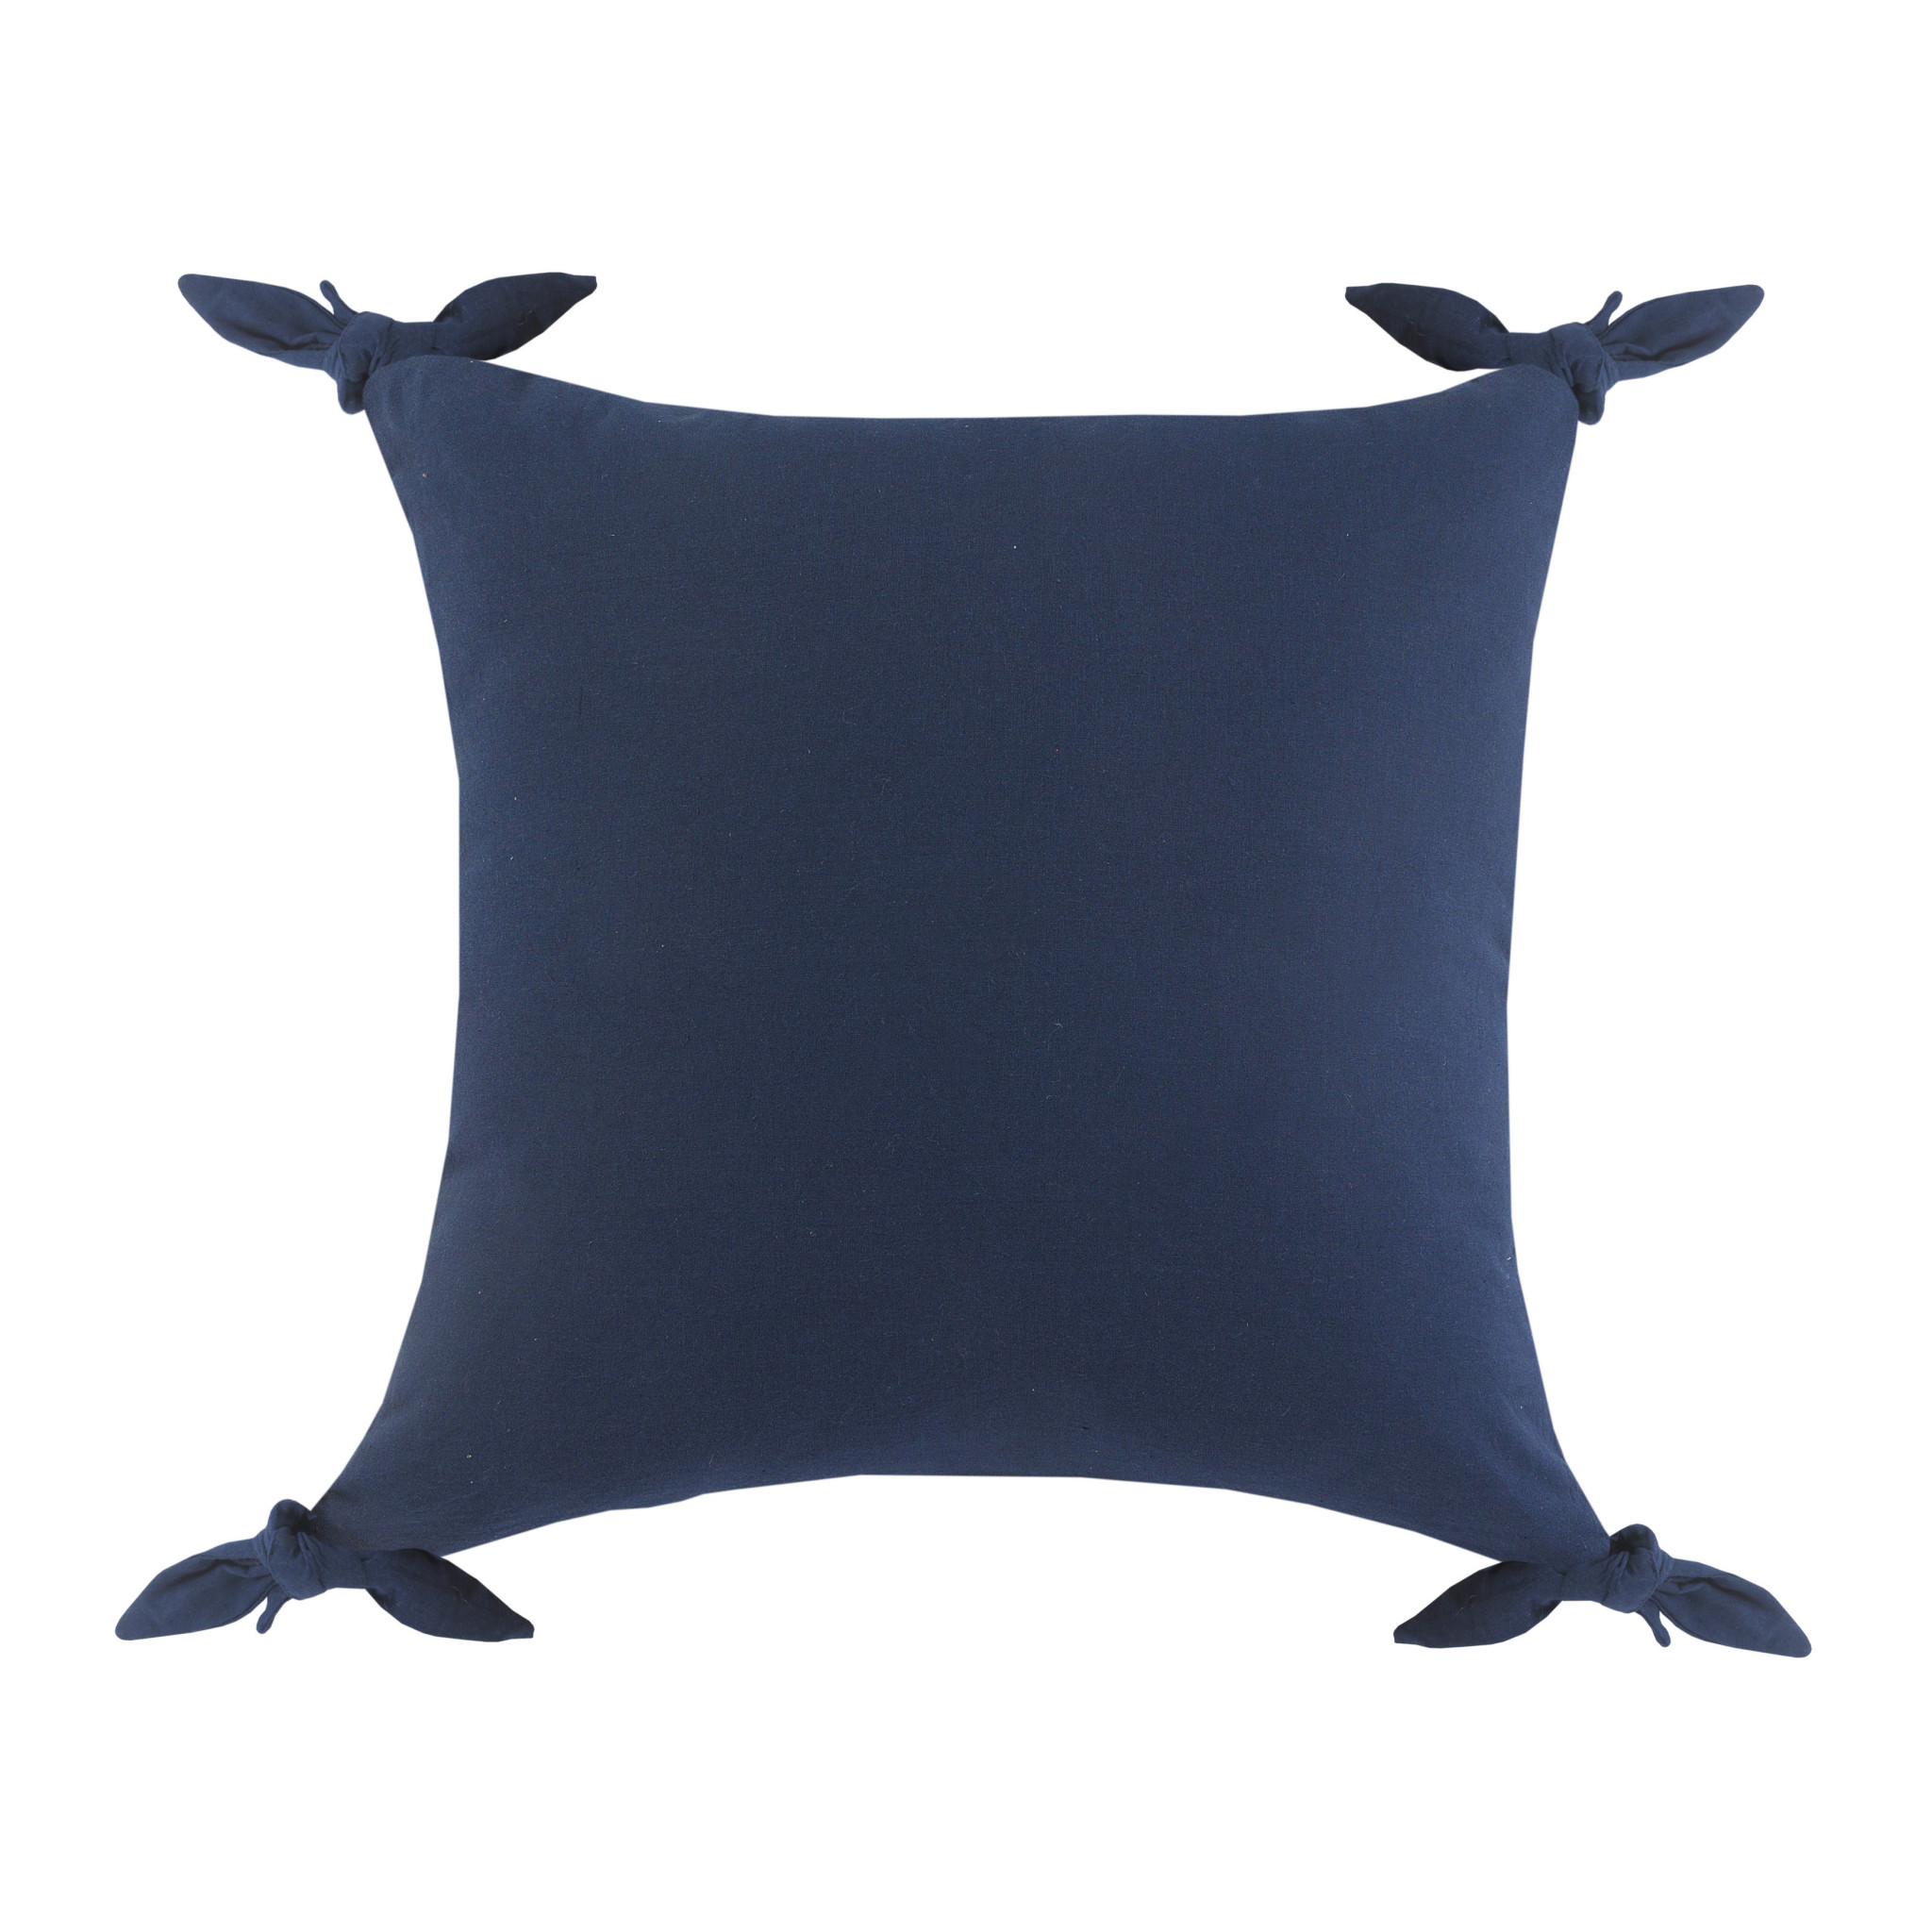 20" X 20" Navy Blue 100% Cotton Zippered Pillow-516636-1